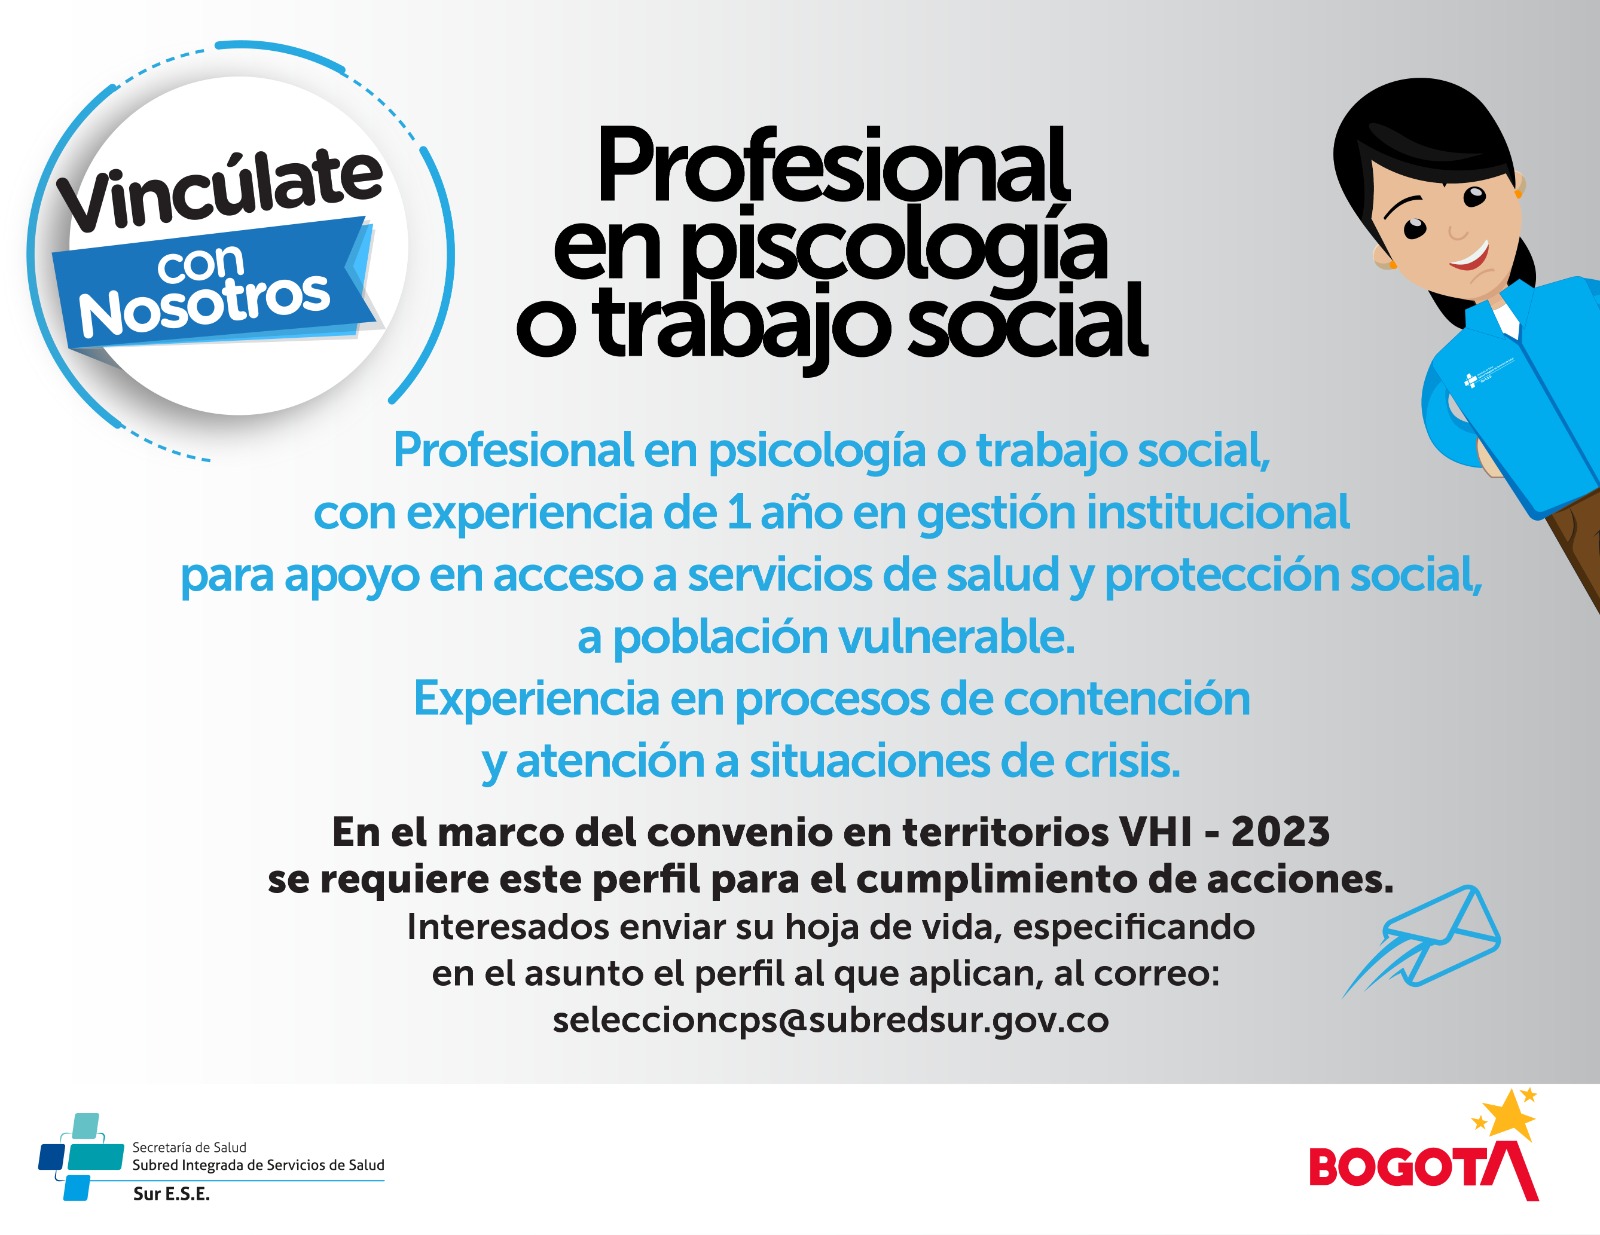 Perfil profesional en psicología o trabajo social